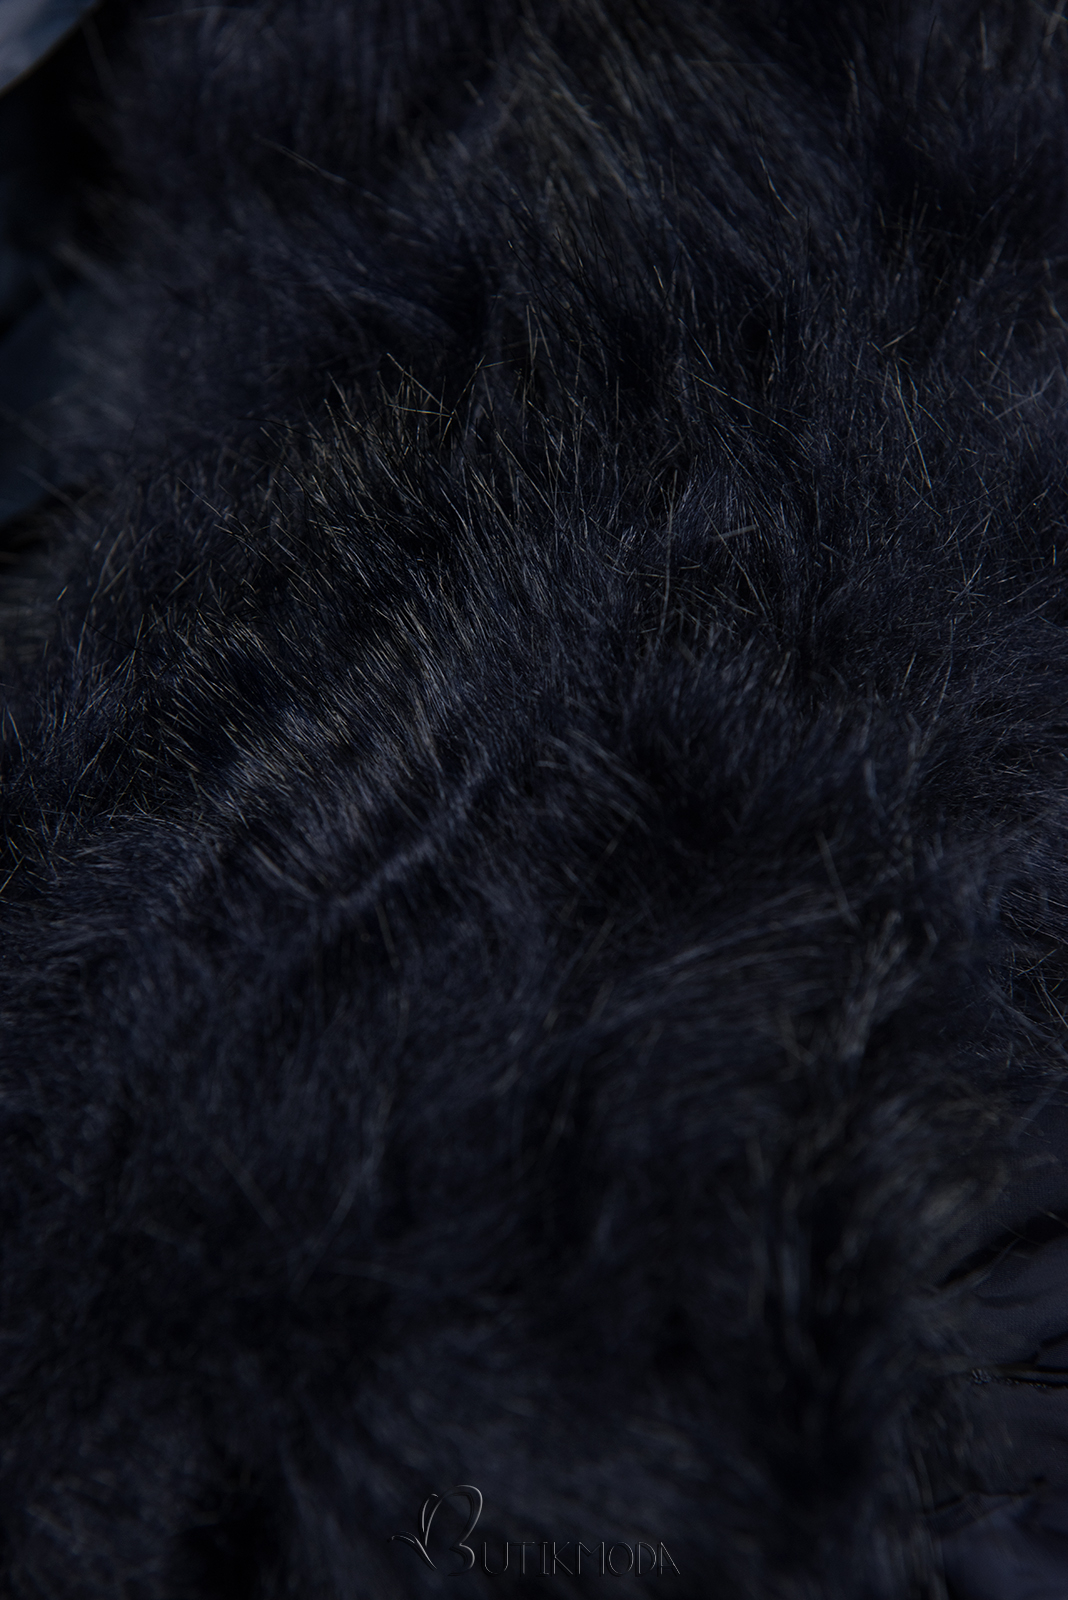 Átmeneti steppelt kabát - sötétkék színű